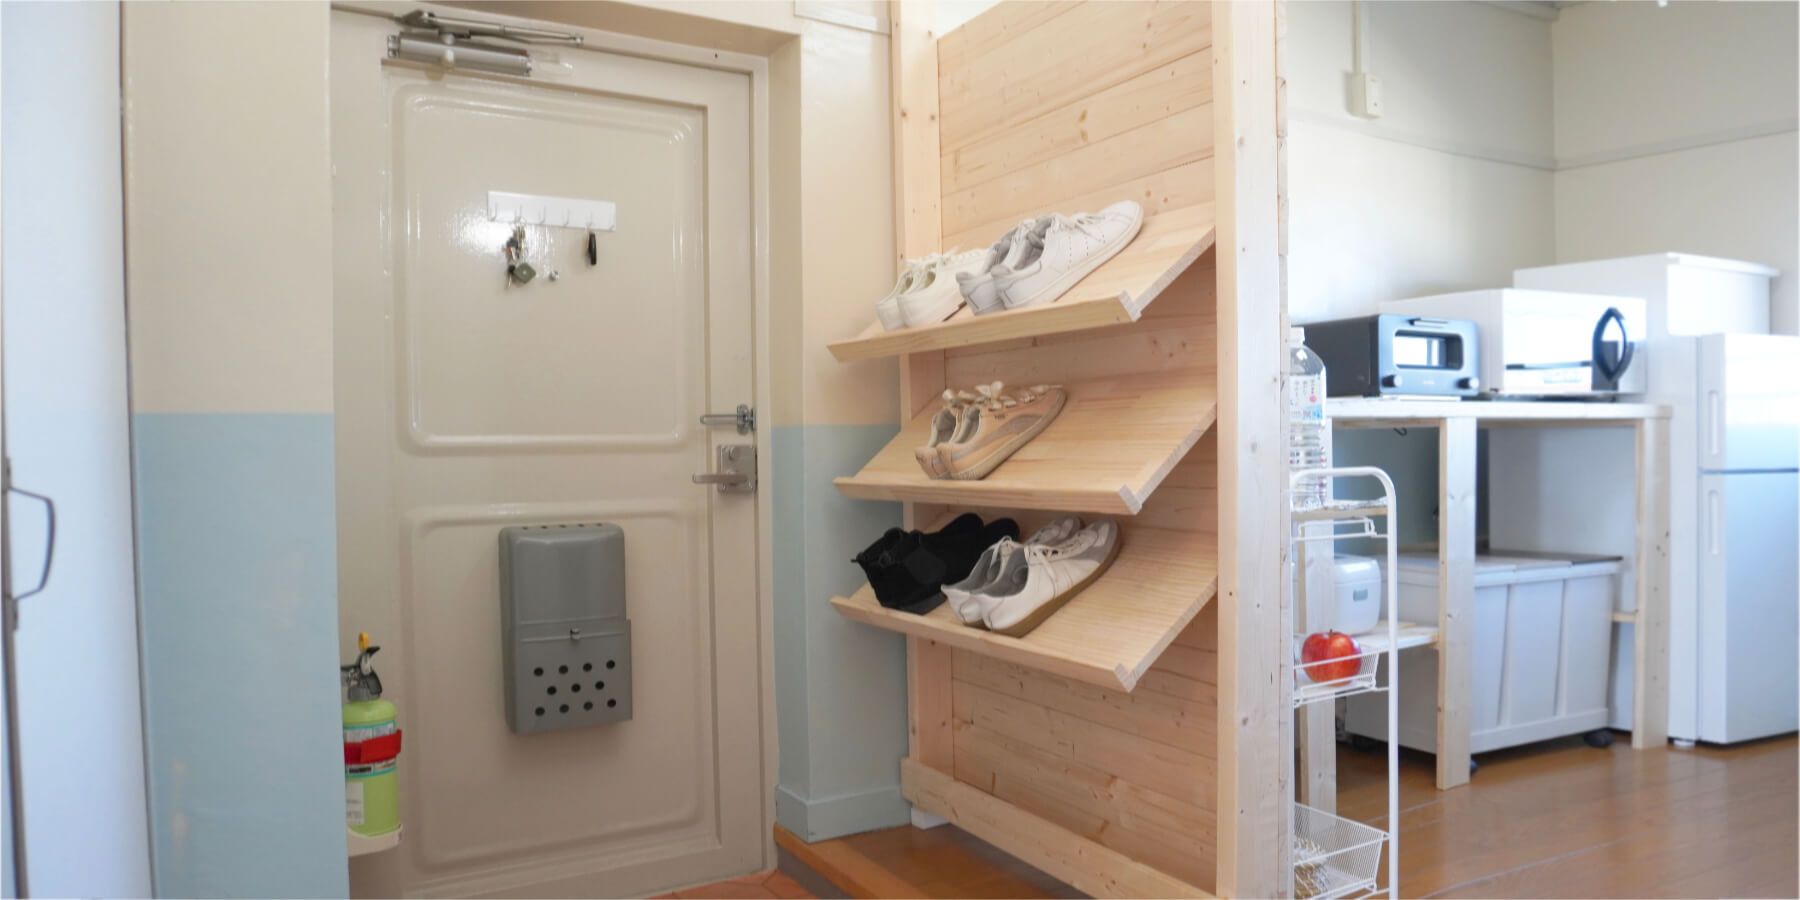 2靴箱のない玄関に、キッチンとの間仕切り兼省スペースな靴箱をDIY。